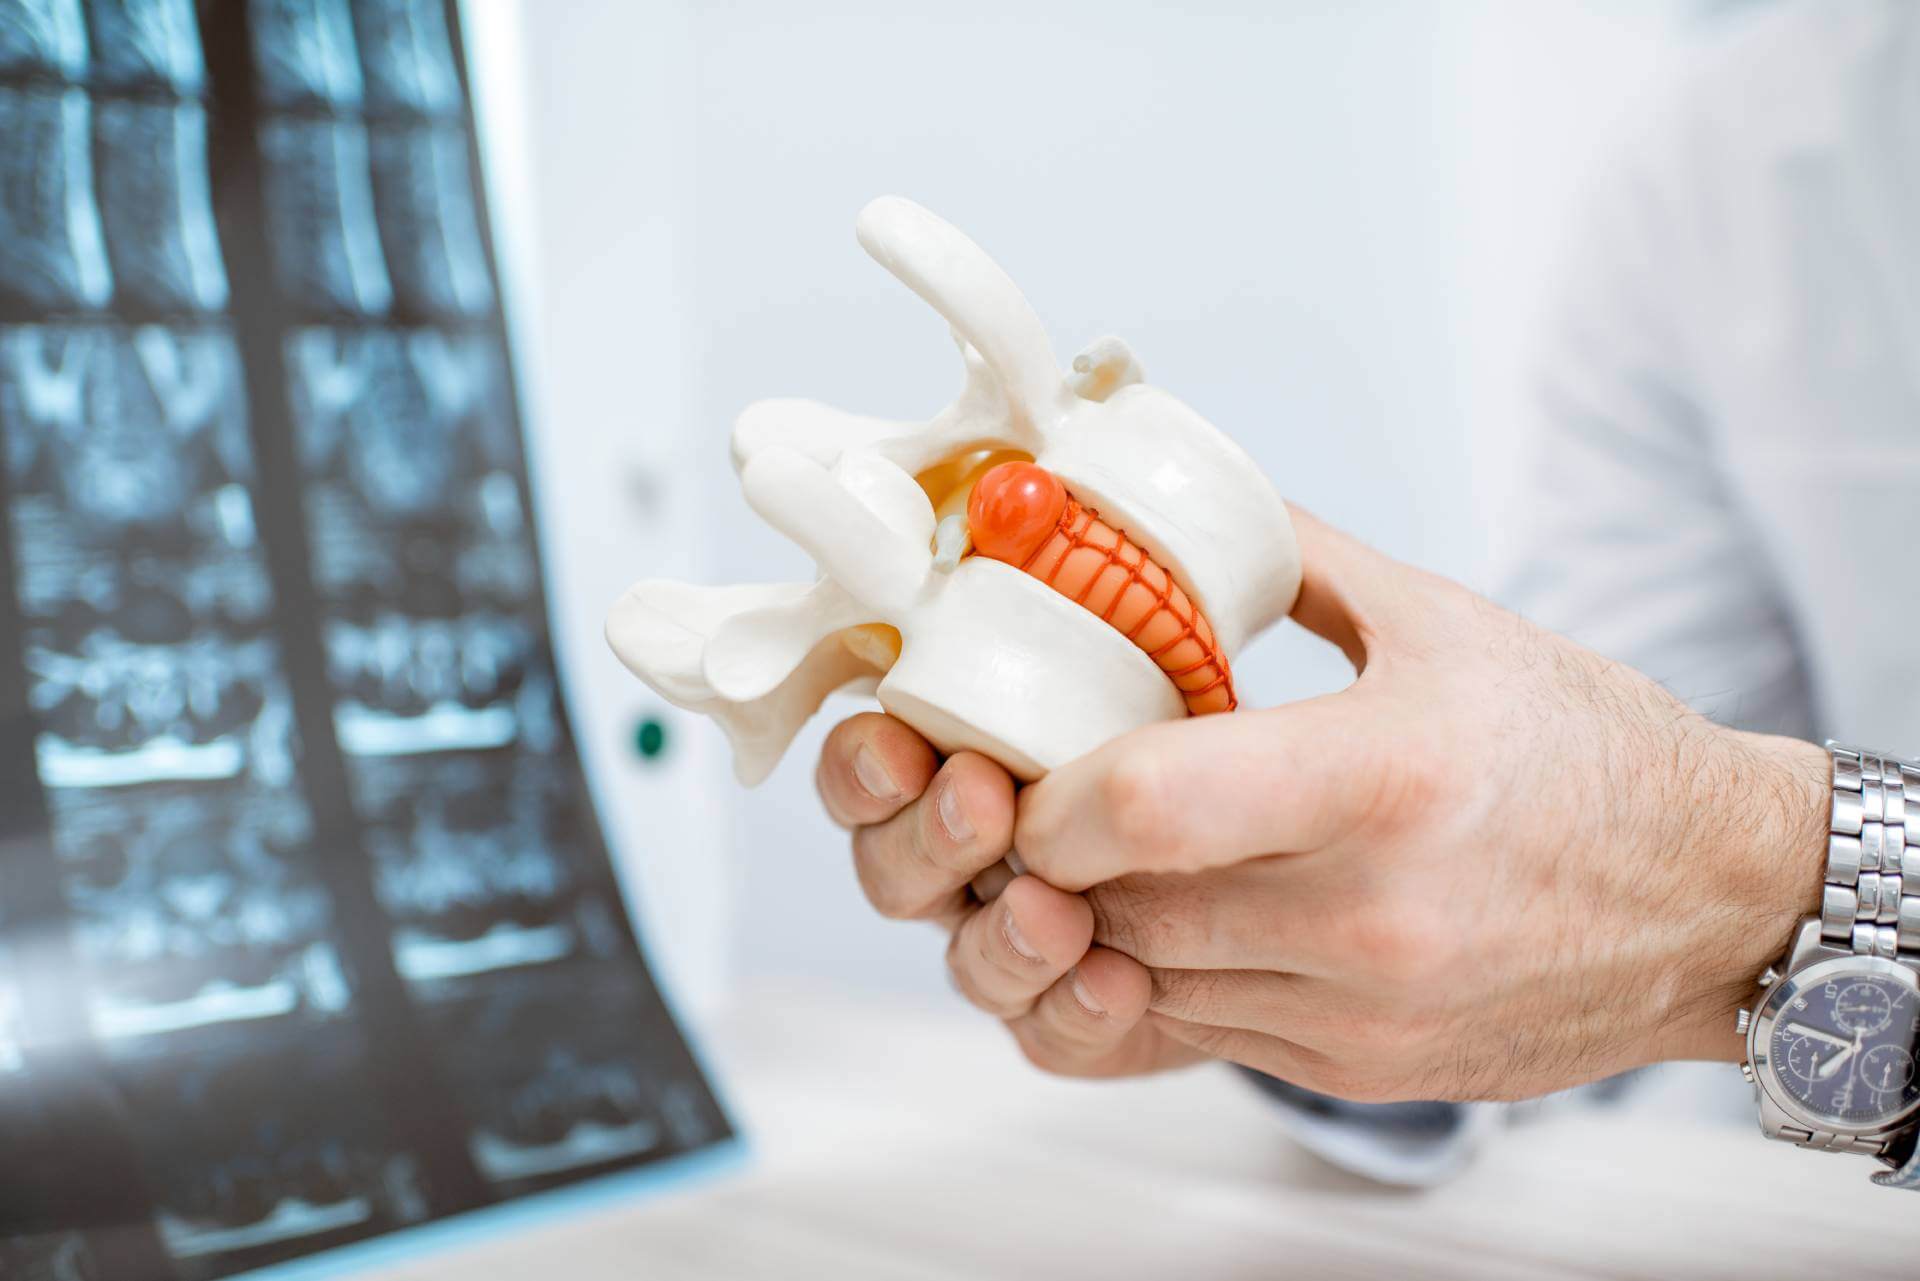 3D model of vertebra with herniated disc